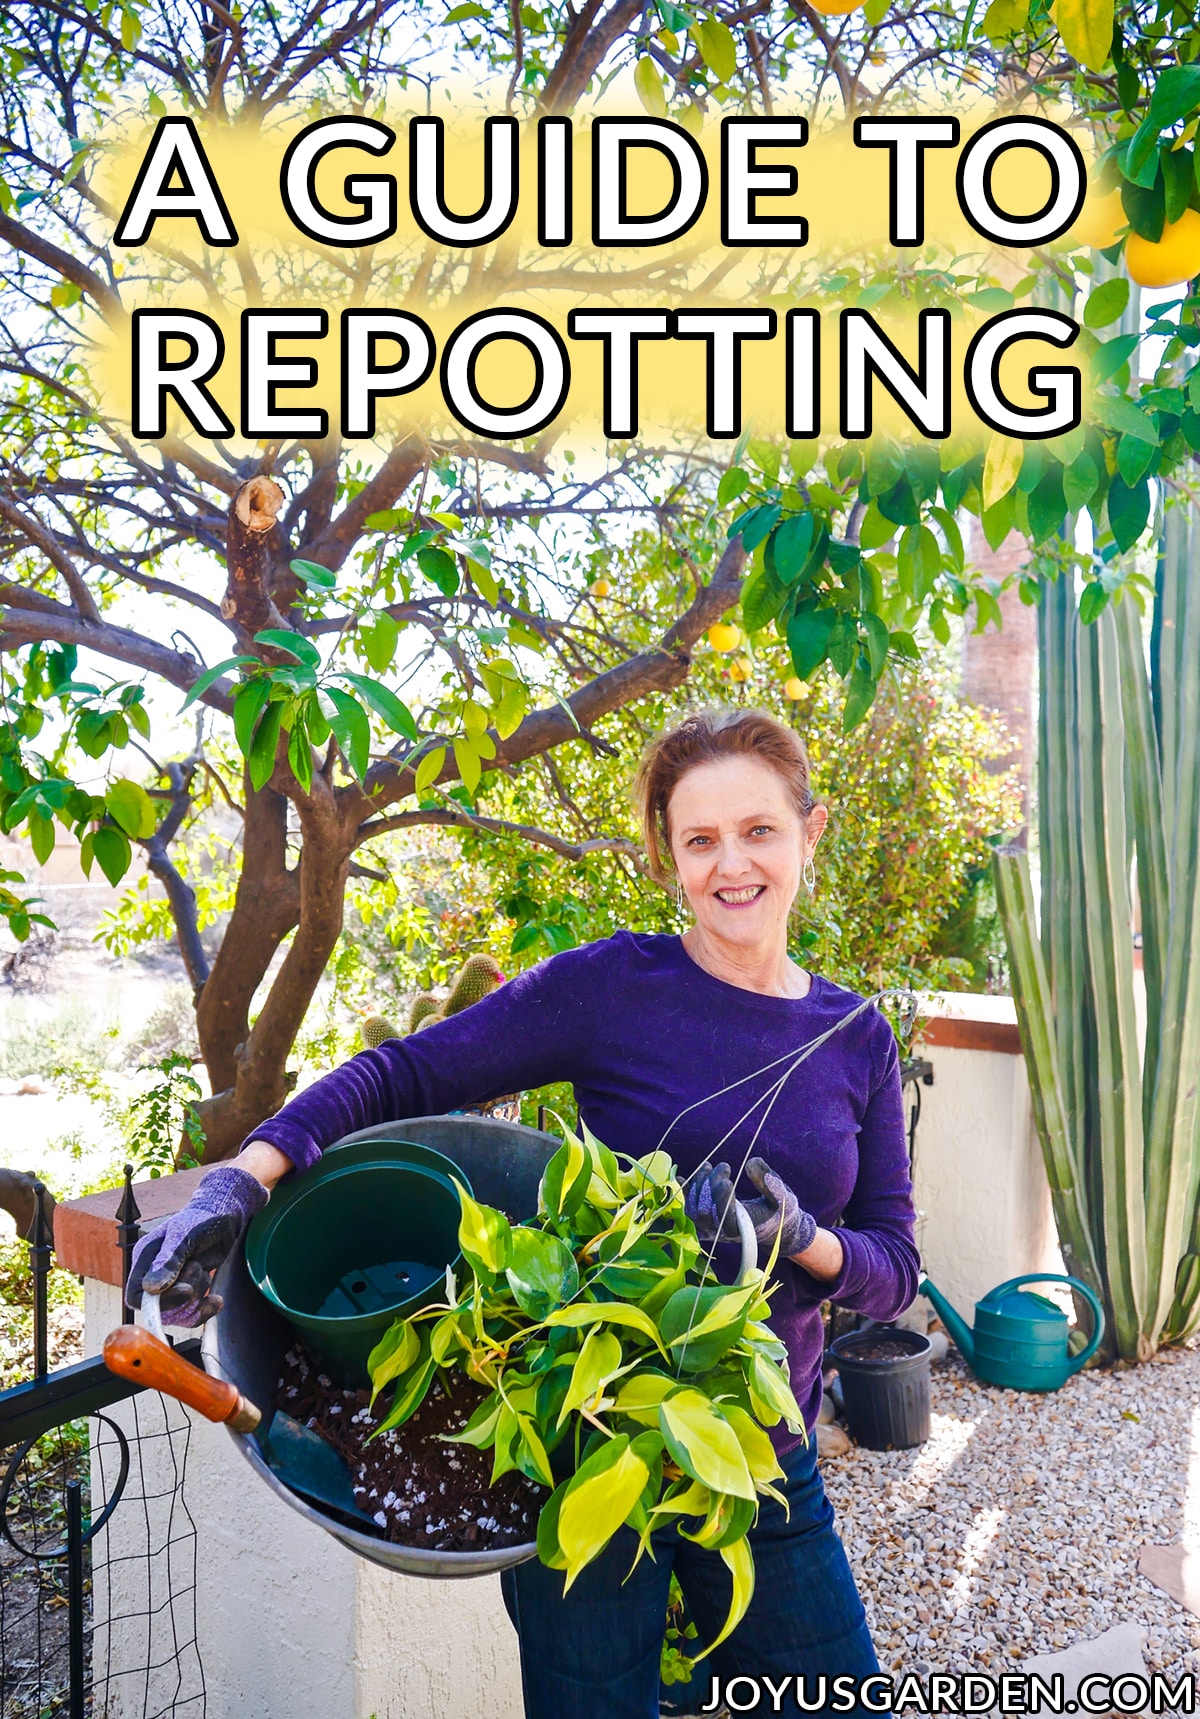  Repotting Plants: Mga Pangunahing Pangunahing Dapat Malaman ng mga Hardinero